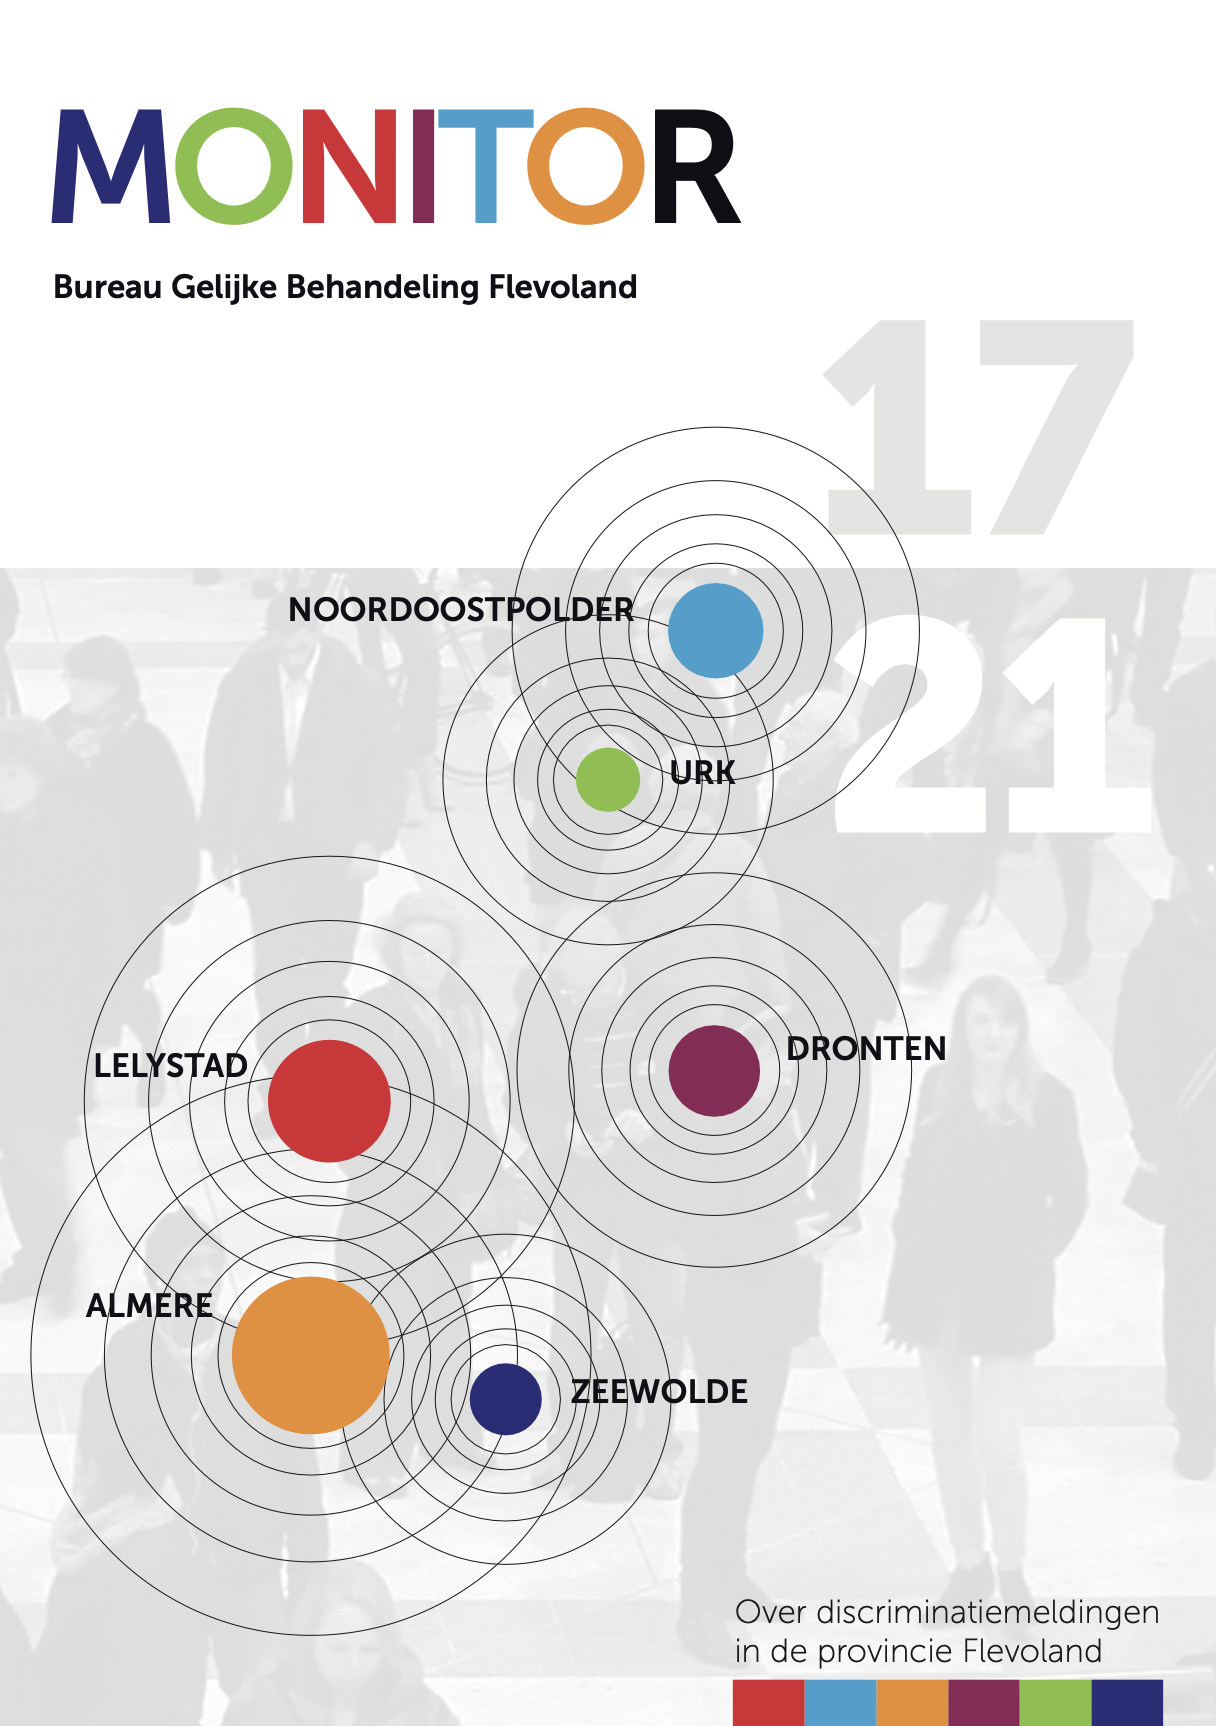 Afbeelding Monitor 2013-2017 Over discriminatie meldingen in Flevoland